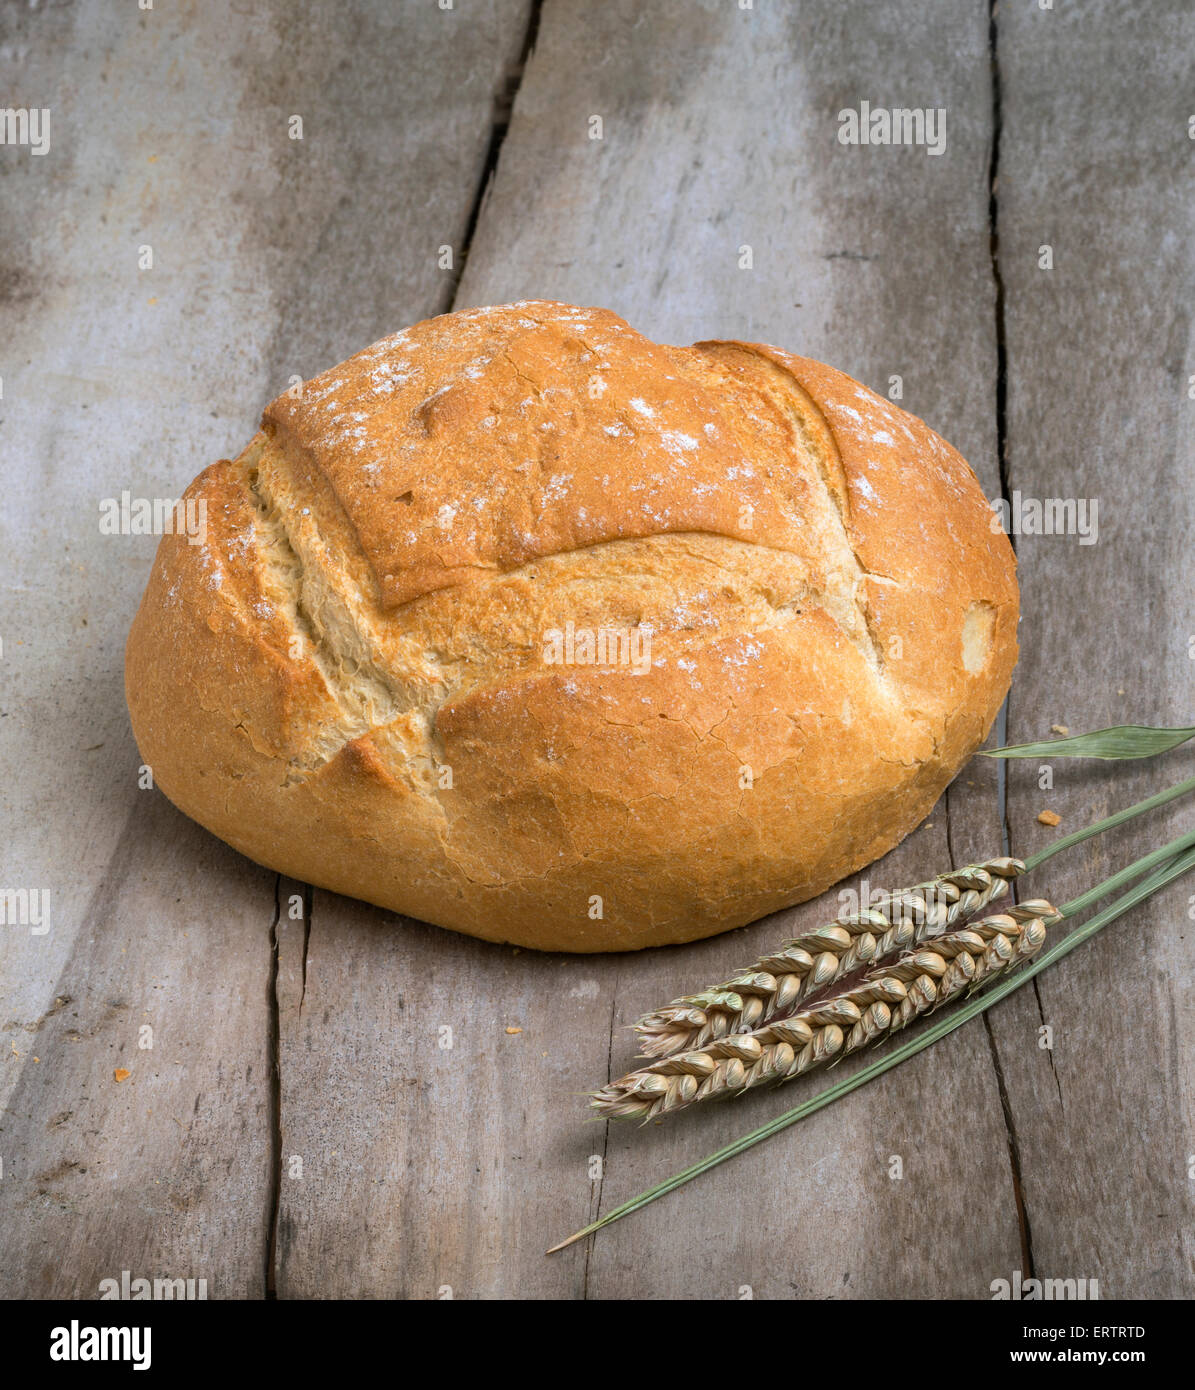 Filone di pane bianco su un vecchio tavolo con chicco di grano Foto Stock